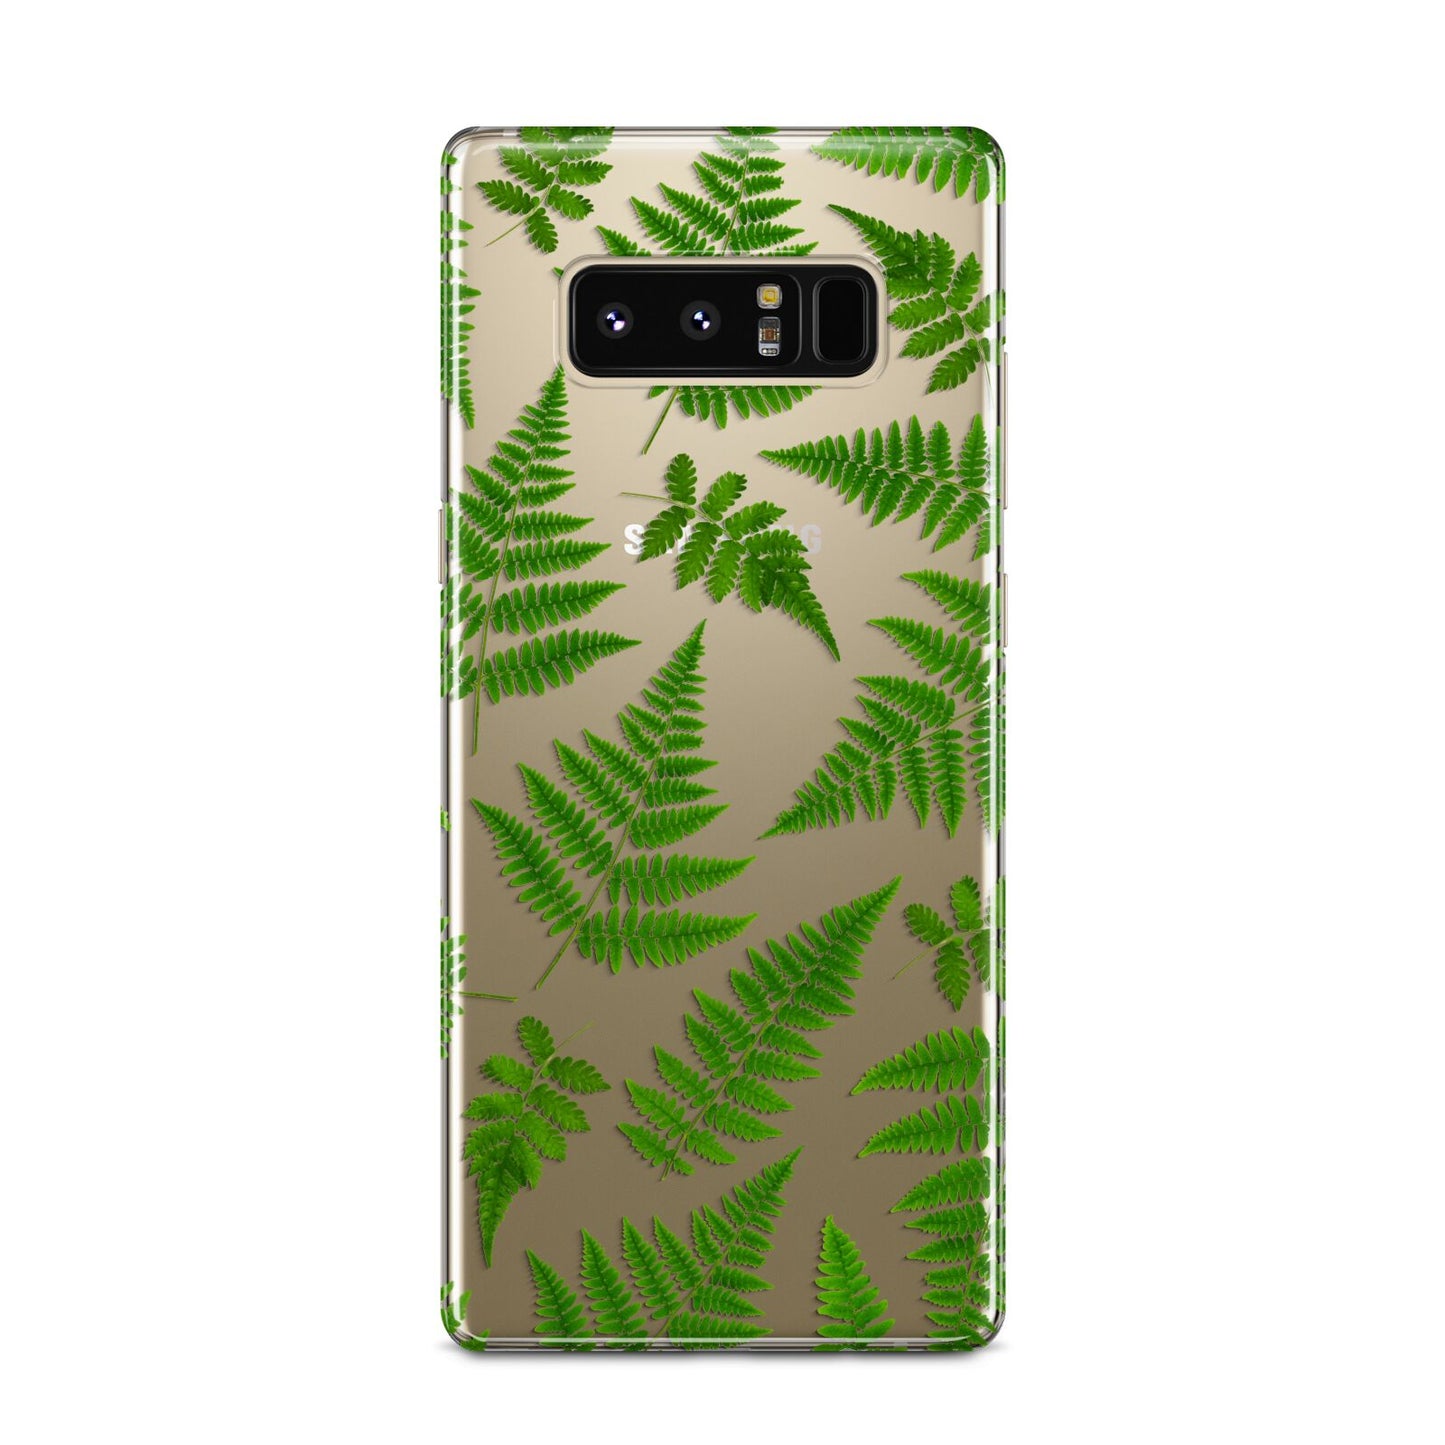 Fern Leaf Samsung Galaxy Note 8 Case